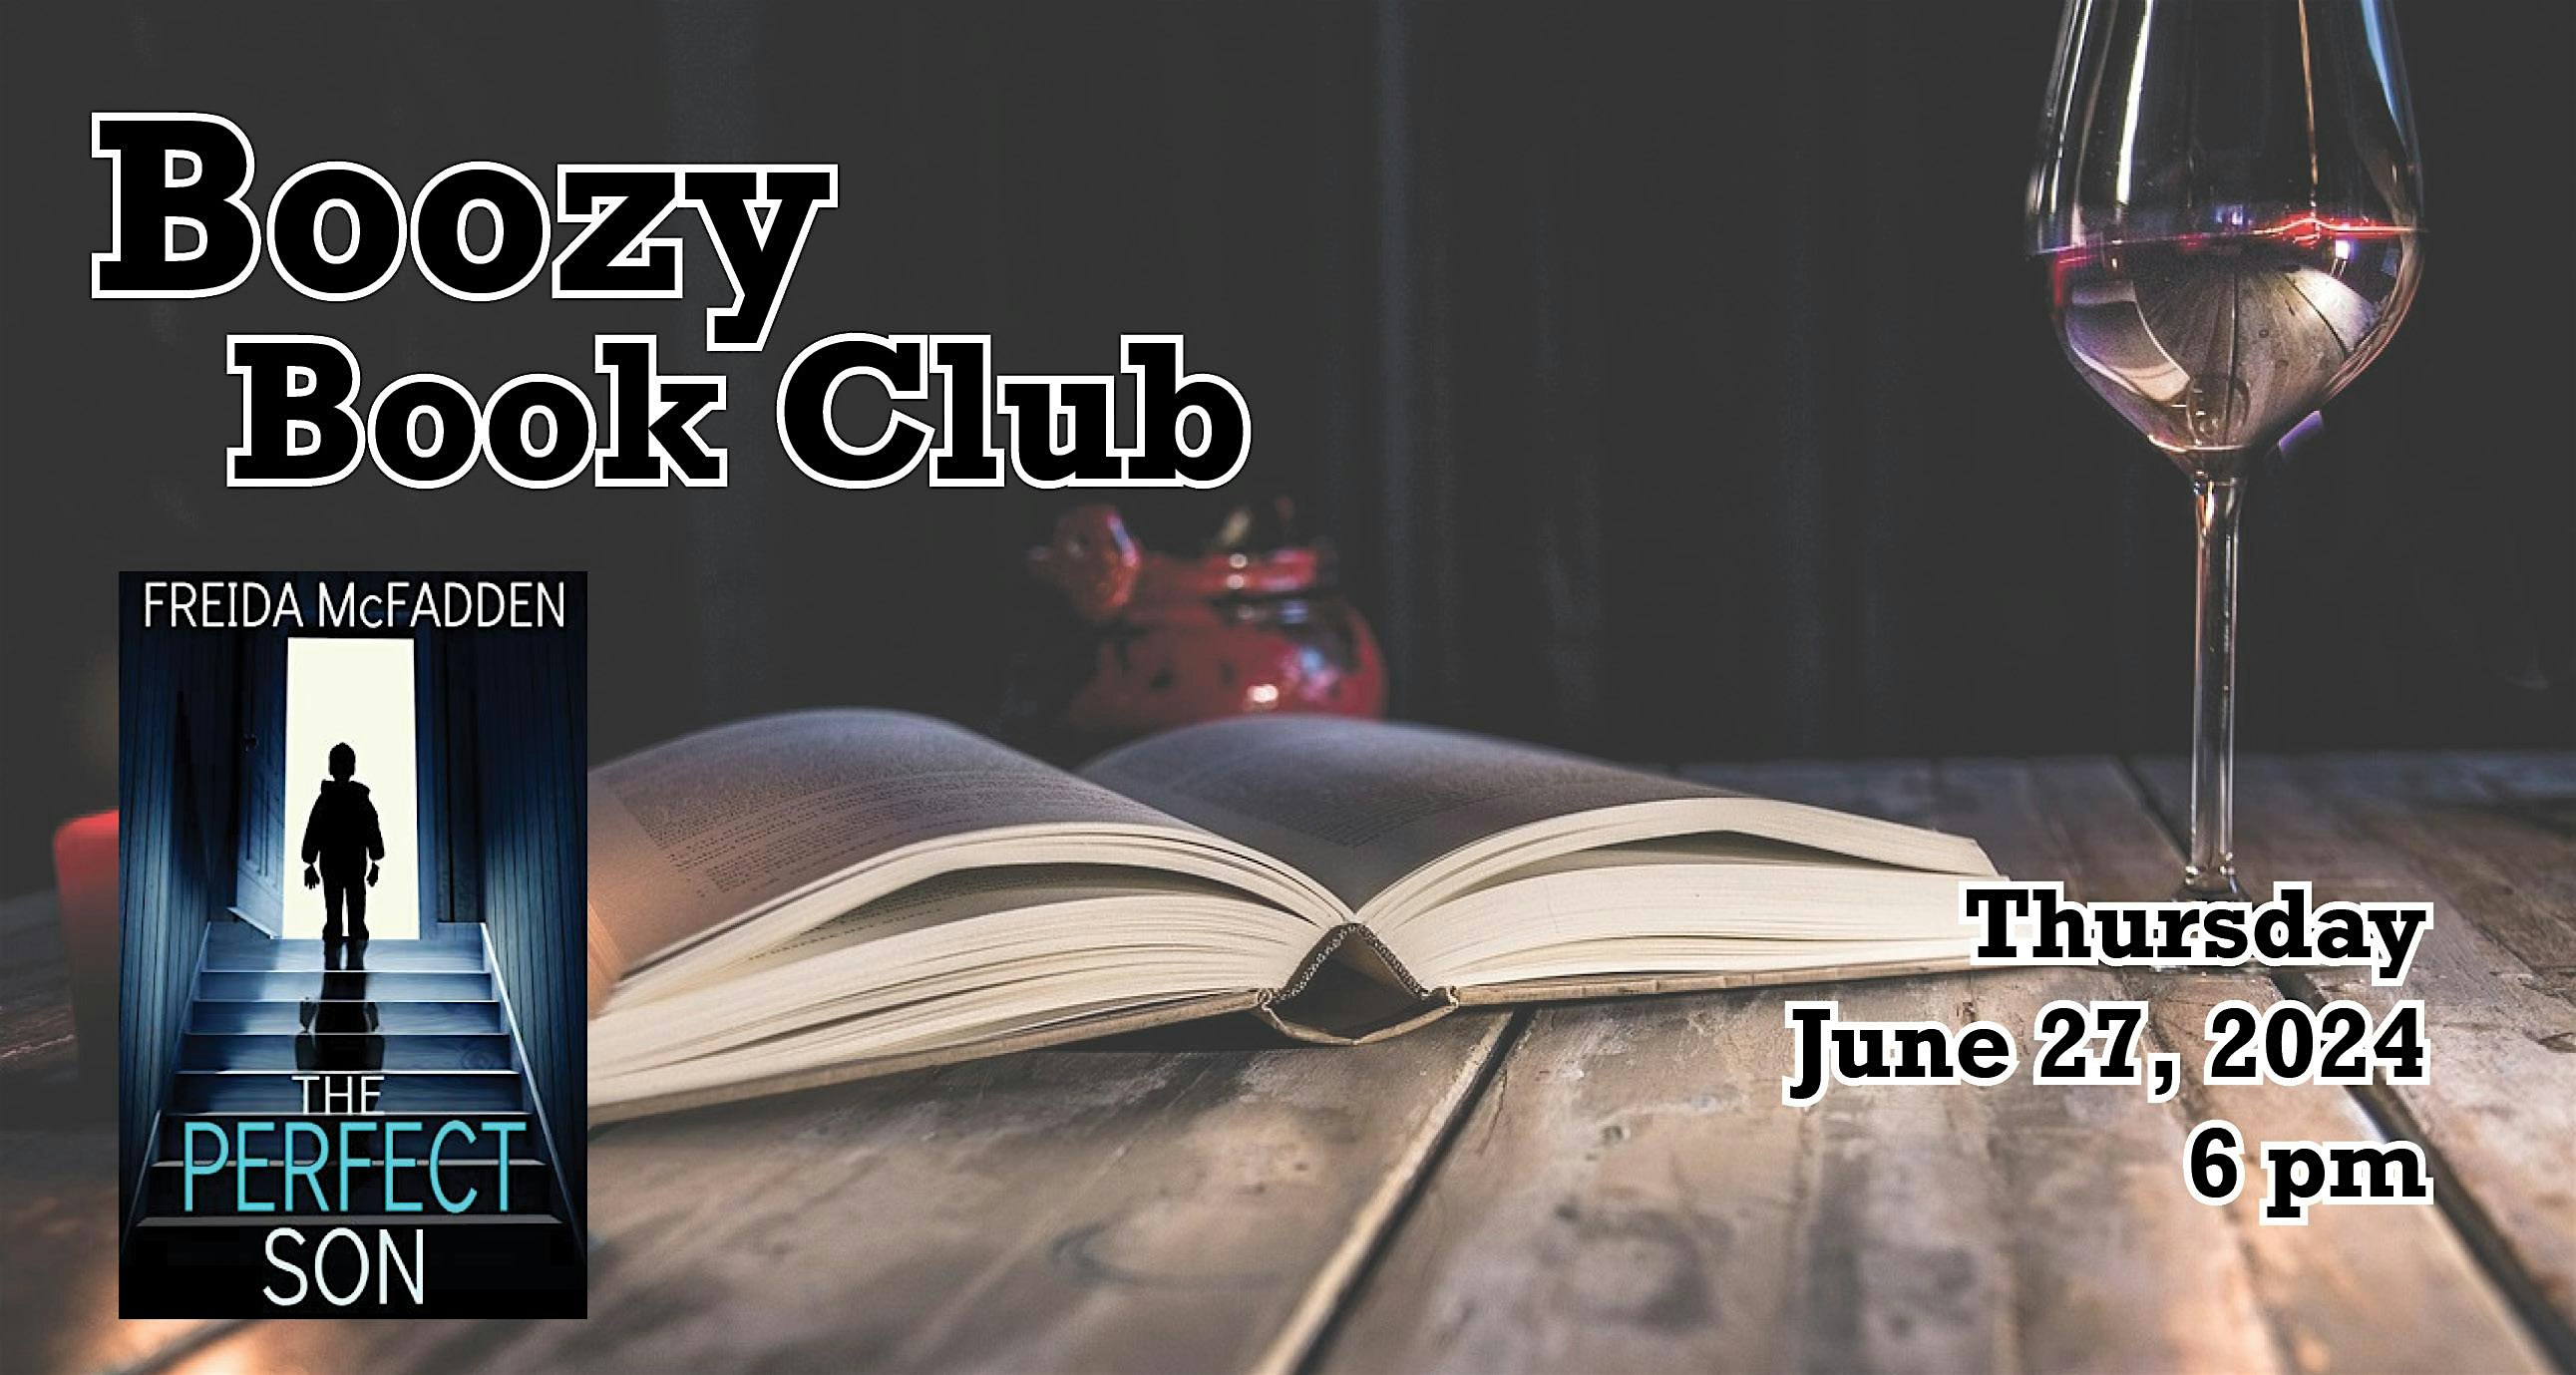 Boozy Book Club